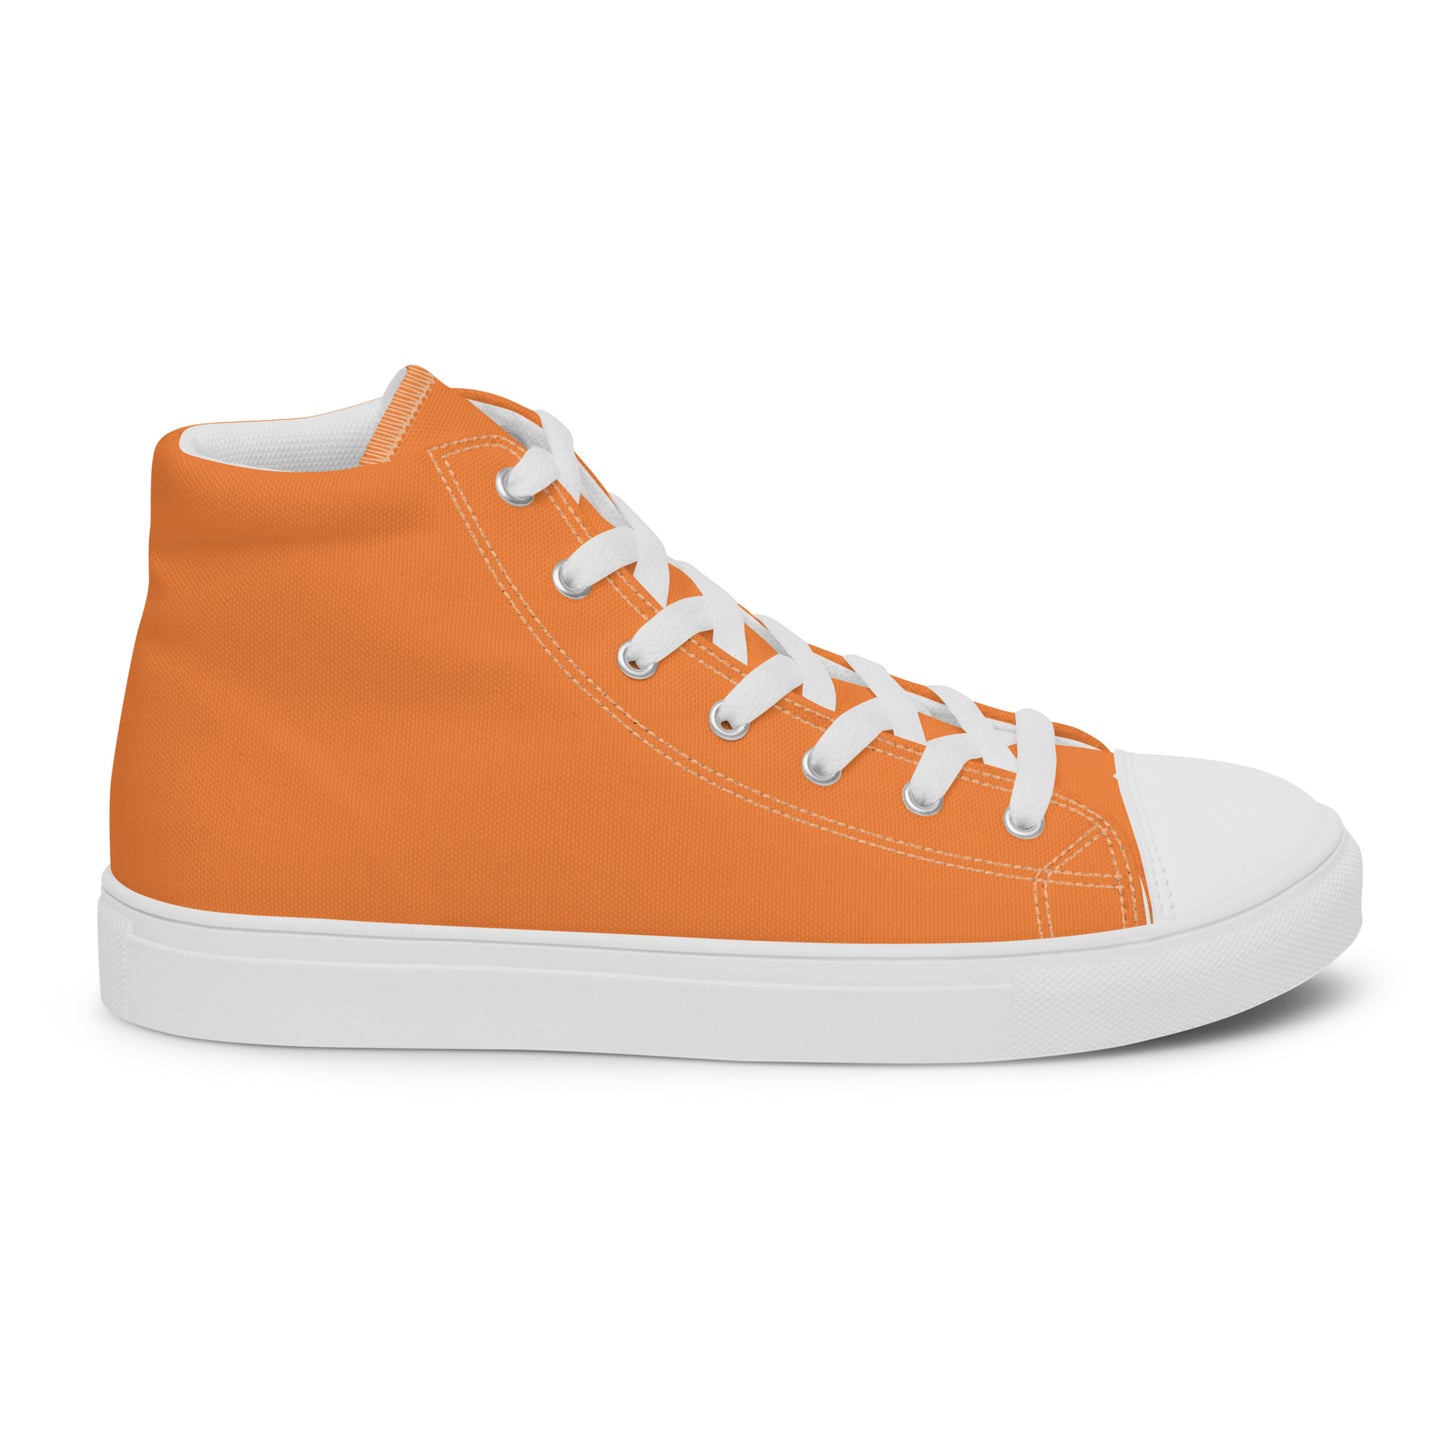 Orange WC Men’s high top canvas shoes